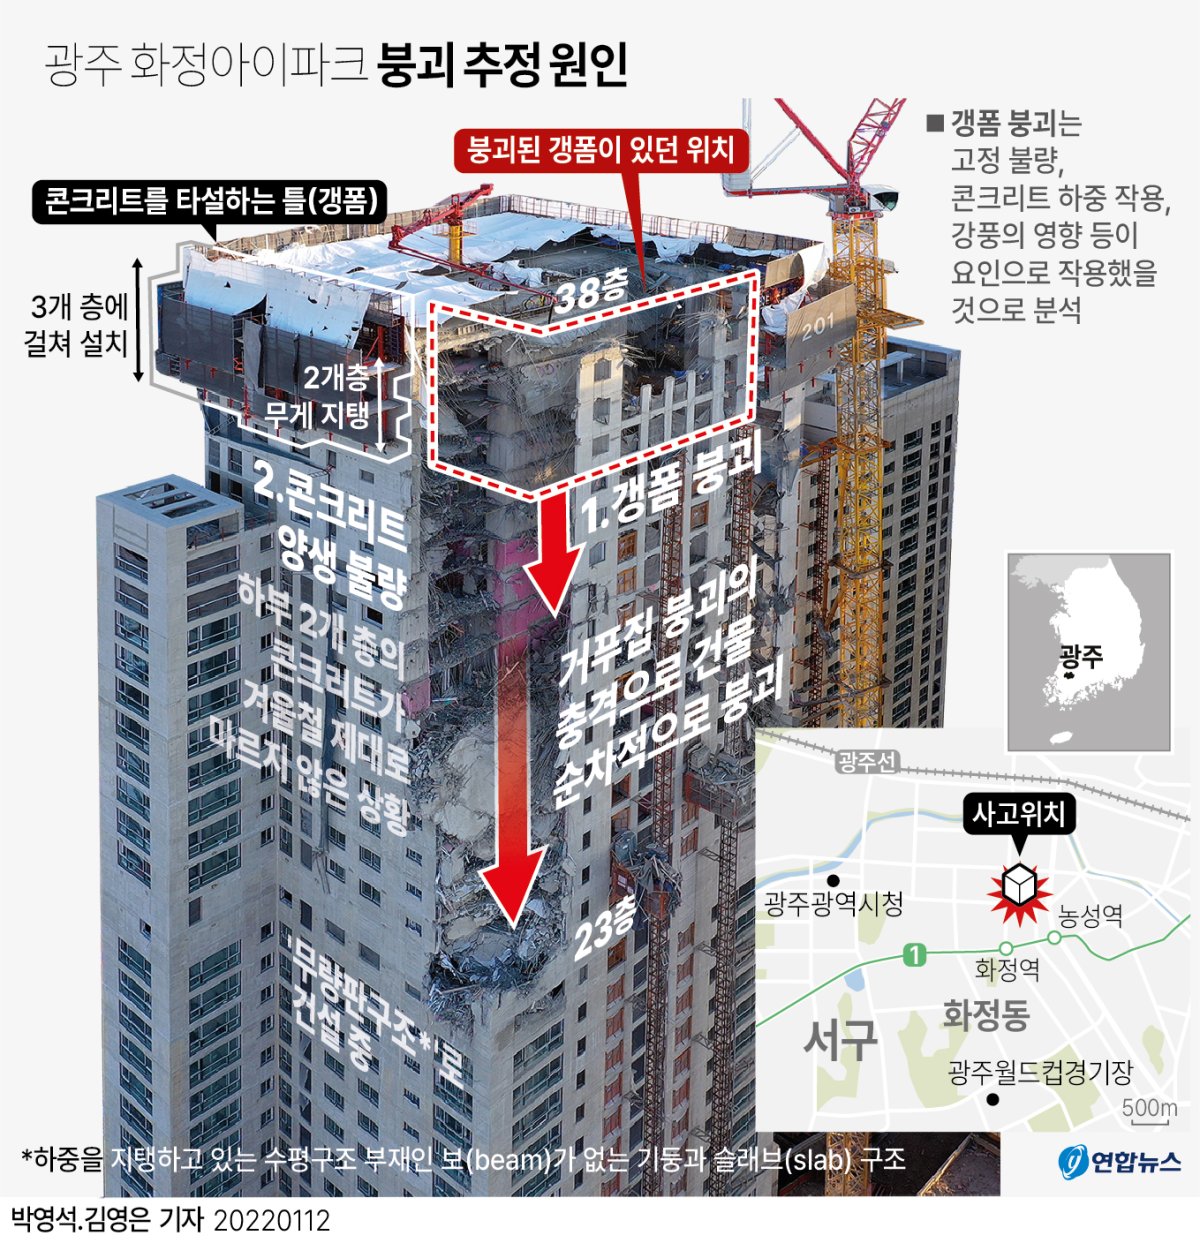 [그래픽] 광주 화정아이파크 붕괴 추정 원인